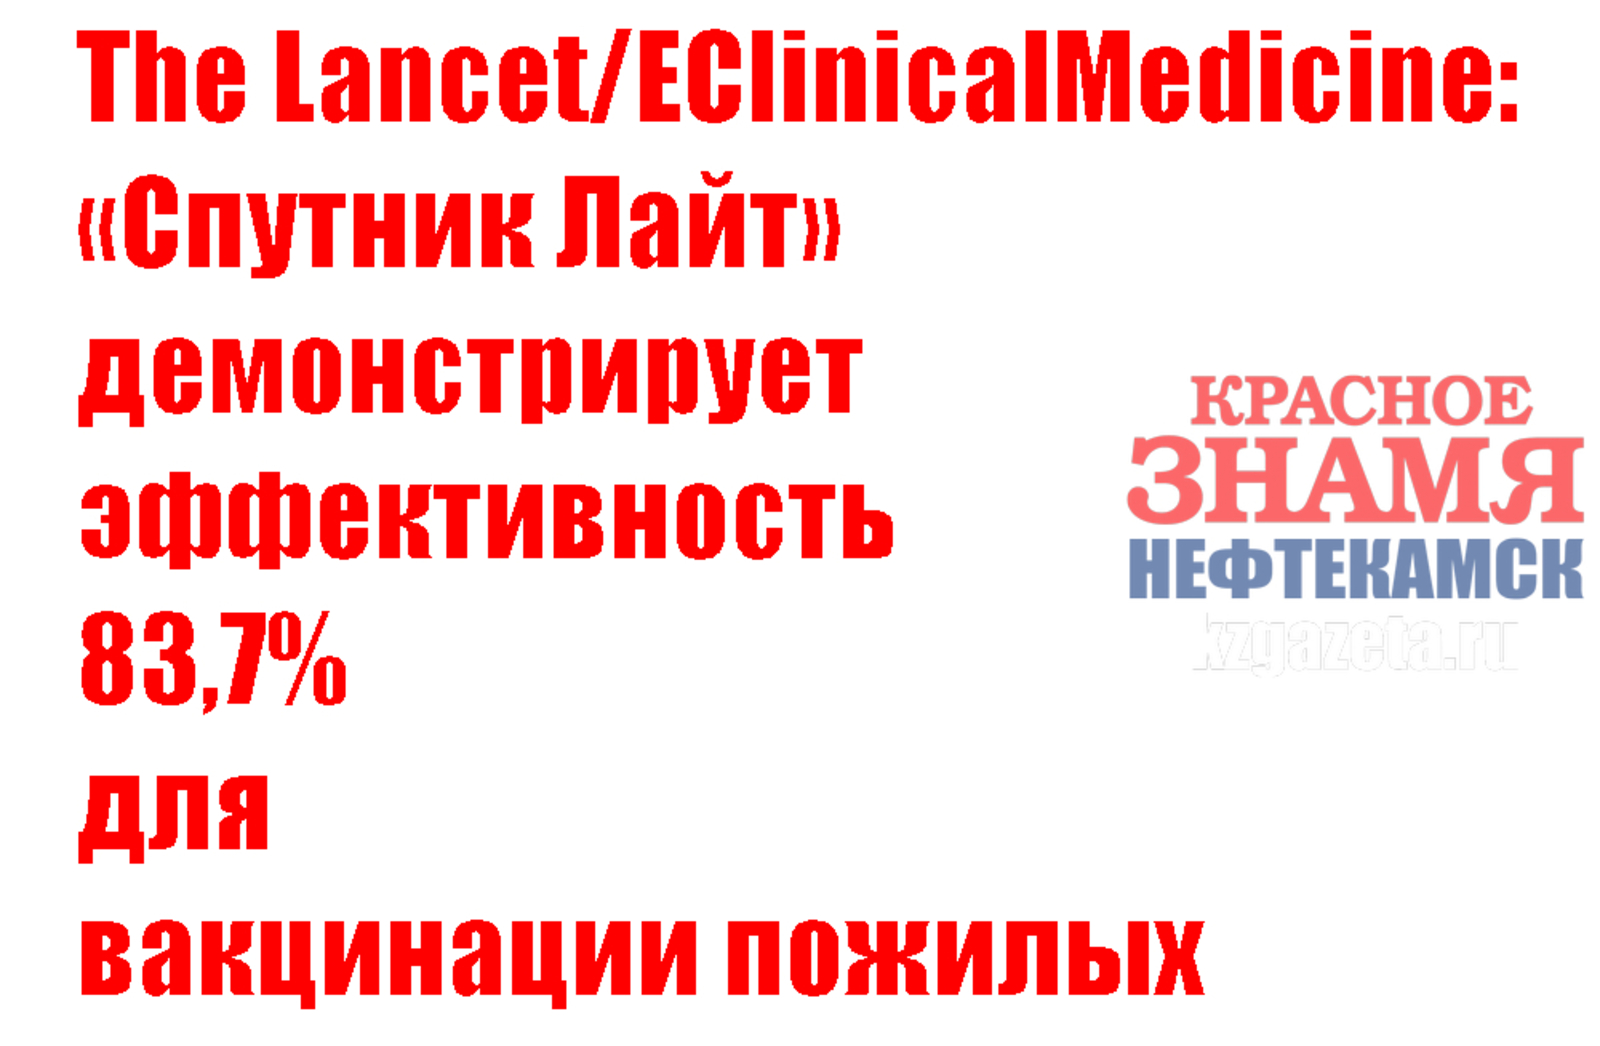 The Lancet/EClinicalMedicine: «Спутник Лайт» демонстрирует эффективность 83,7% для вакцинации пожилых